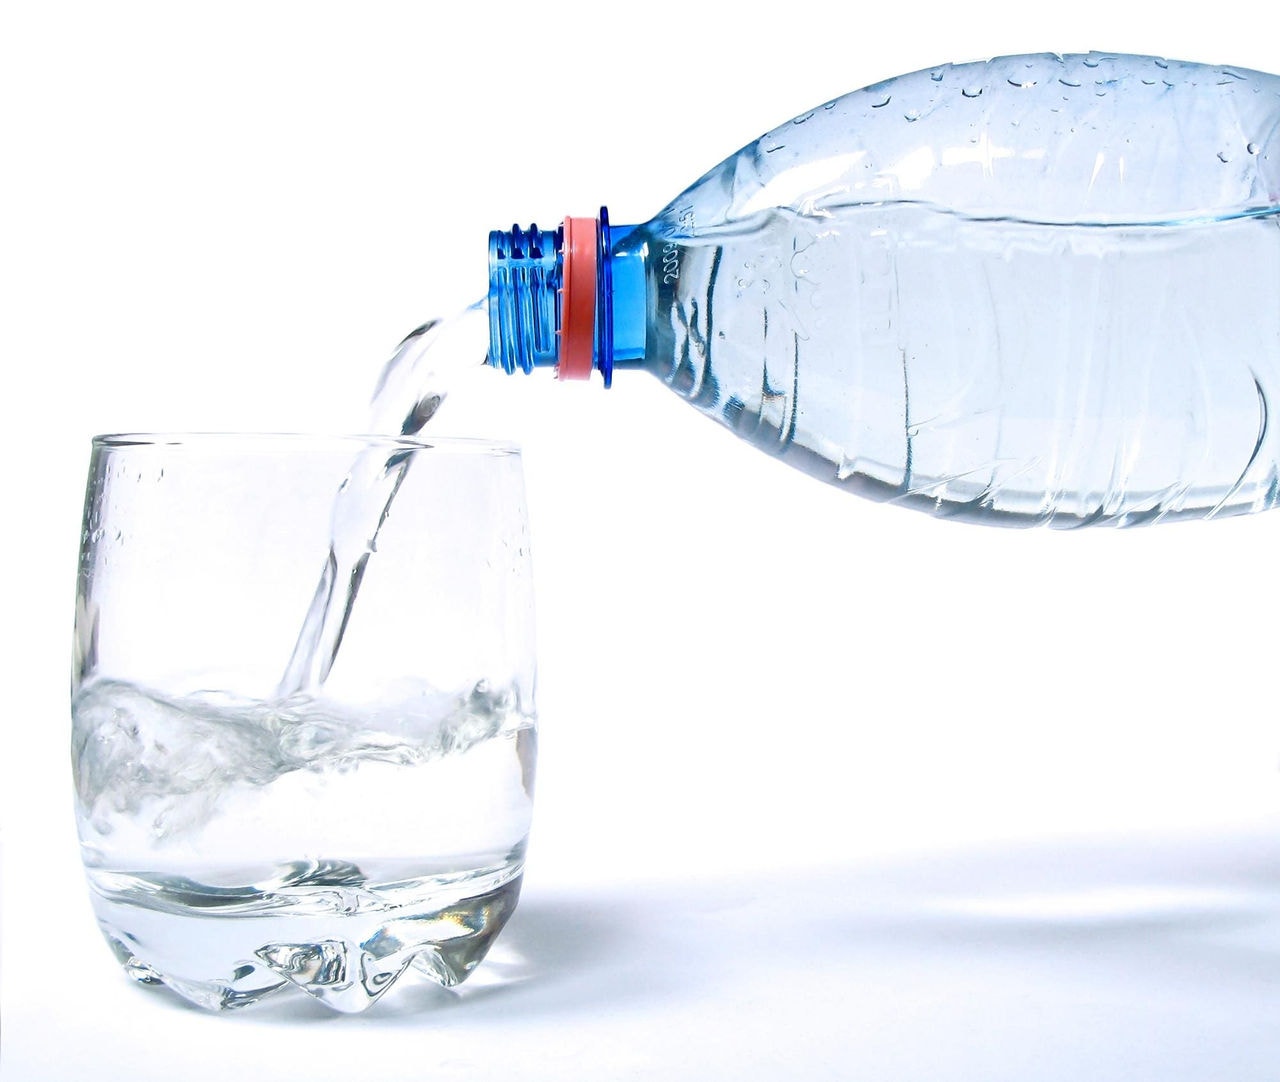 Água potável pode estar contaminada